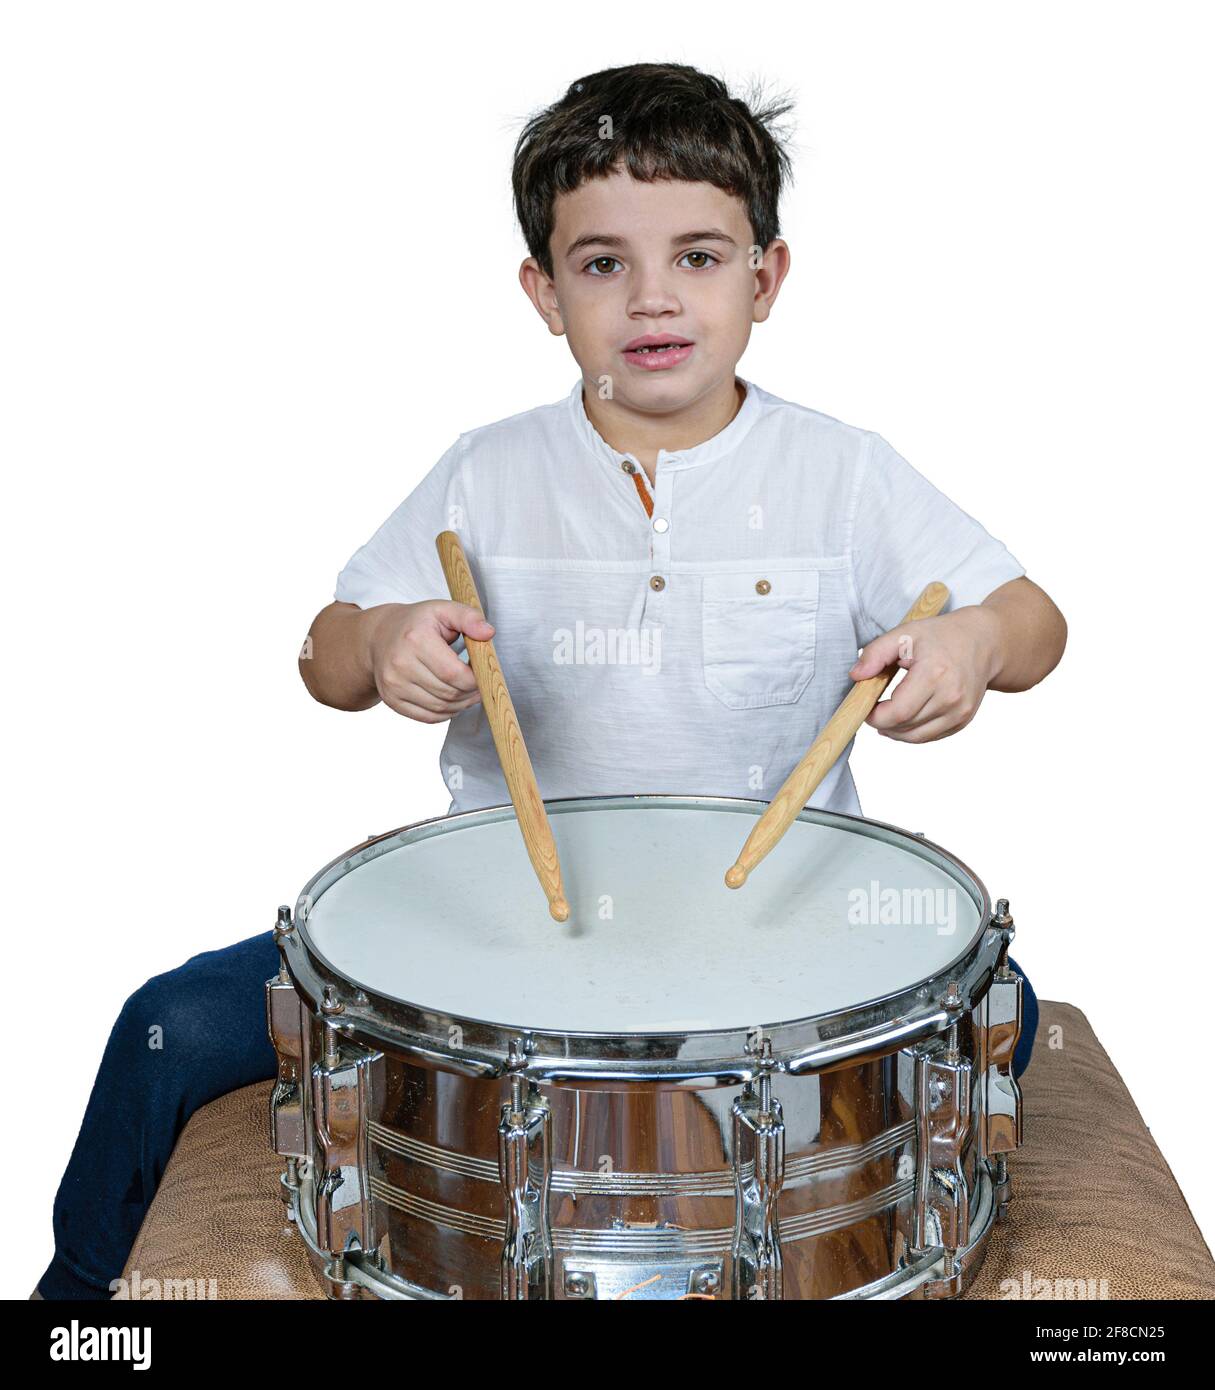 7-jähriges Kind starrte auf die Kamera und spielte Schlagzeug. Weißer Hintergrund. Stockfoto